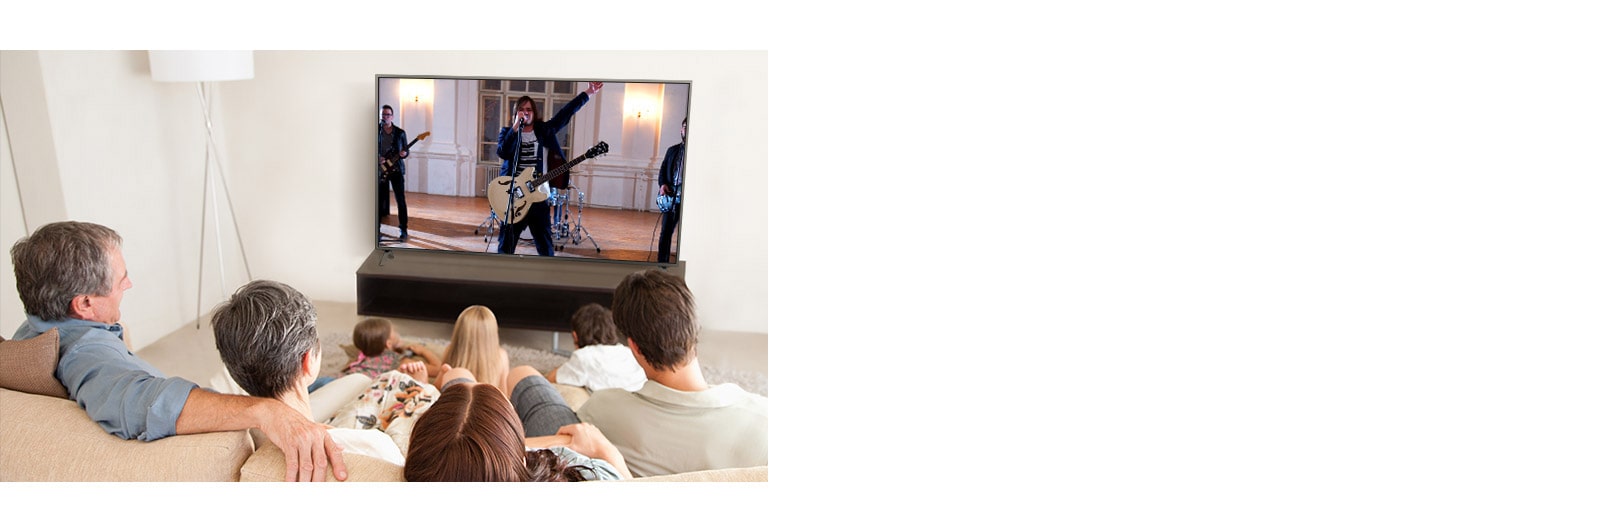 La famiglia di sette membri si riunì in salotto per guardare un film.  Una band sta suonando sullo schermo della TV.